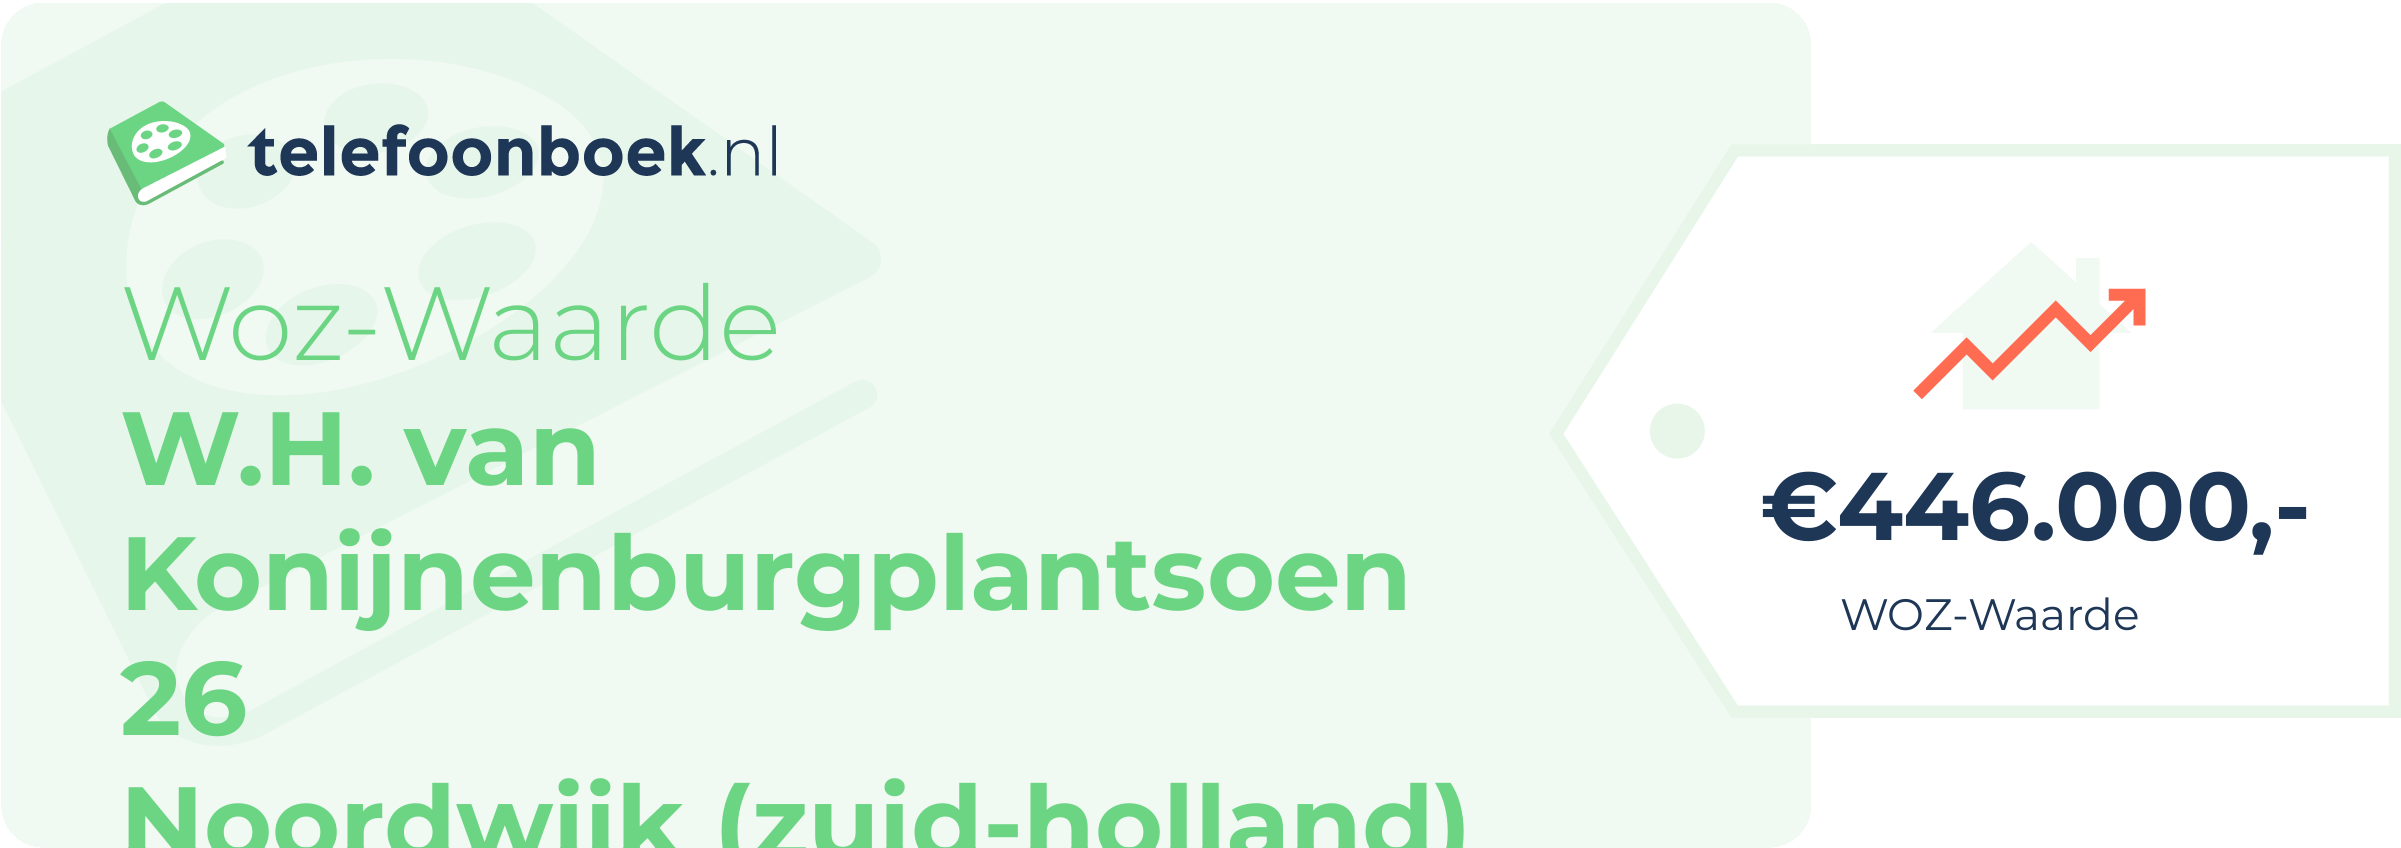 WOZ-waarde W.H. Van Konijnenburgplantsoen 26 Noordwijk (Zuid-Holland)